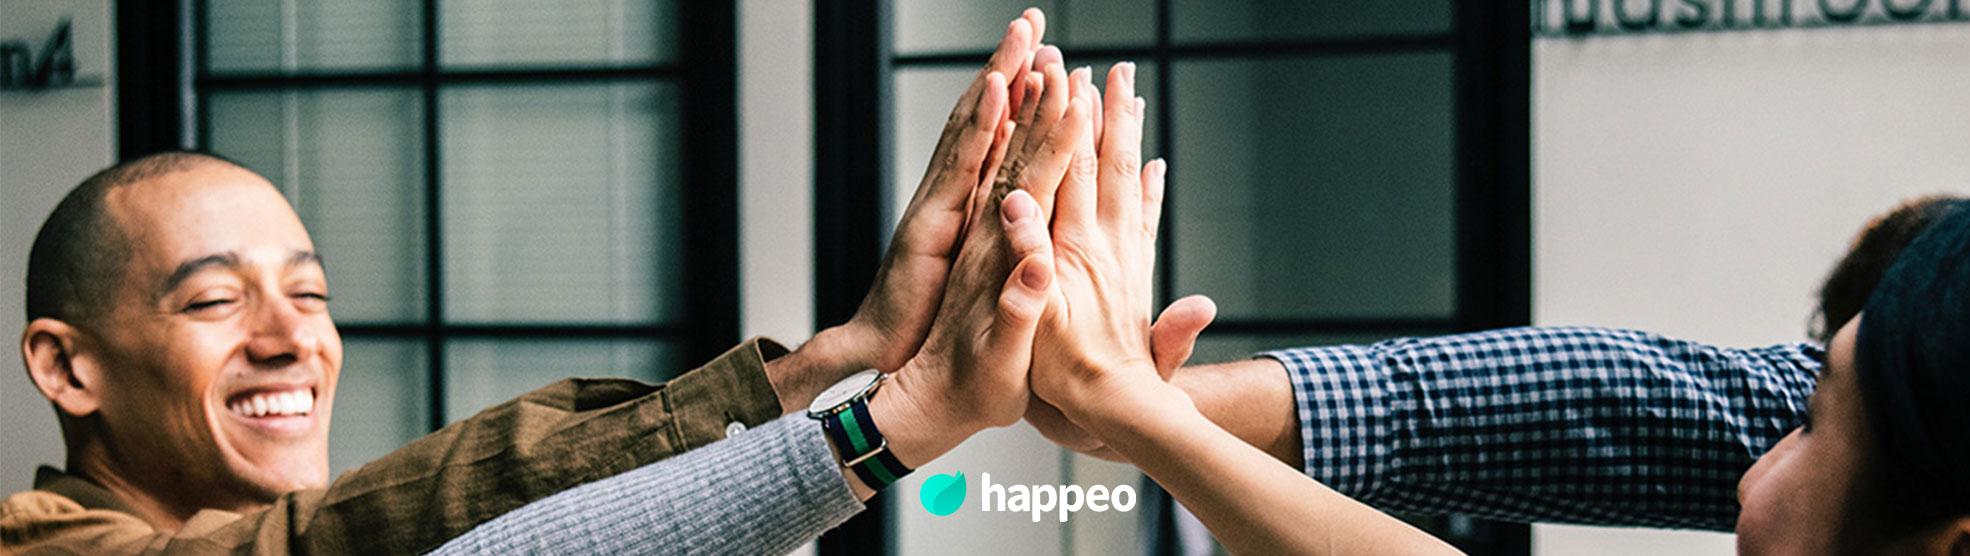 Bewertungen Happeo: Ihr einheitlicher digitaler Arbeitsplatz - Appvizer